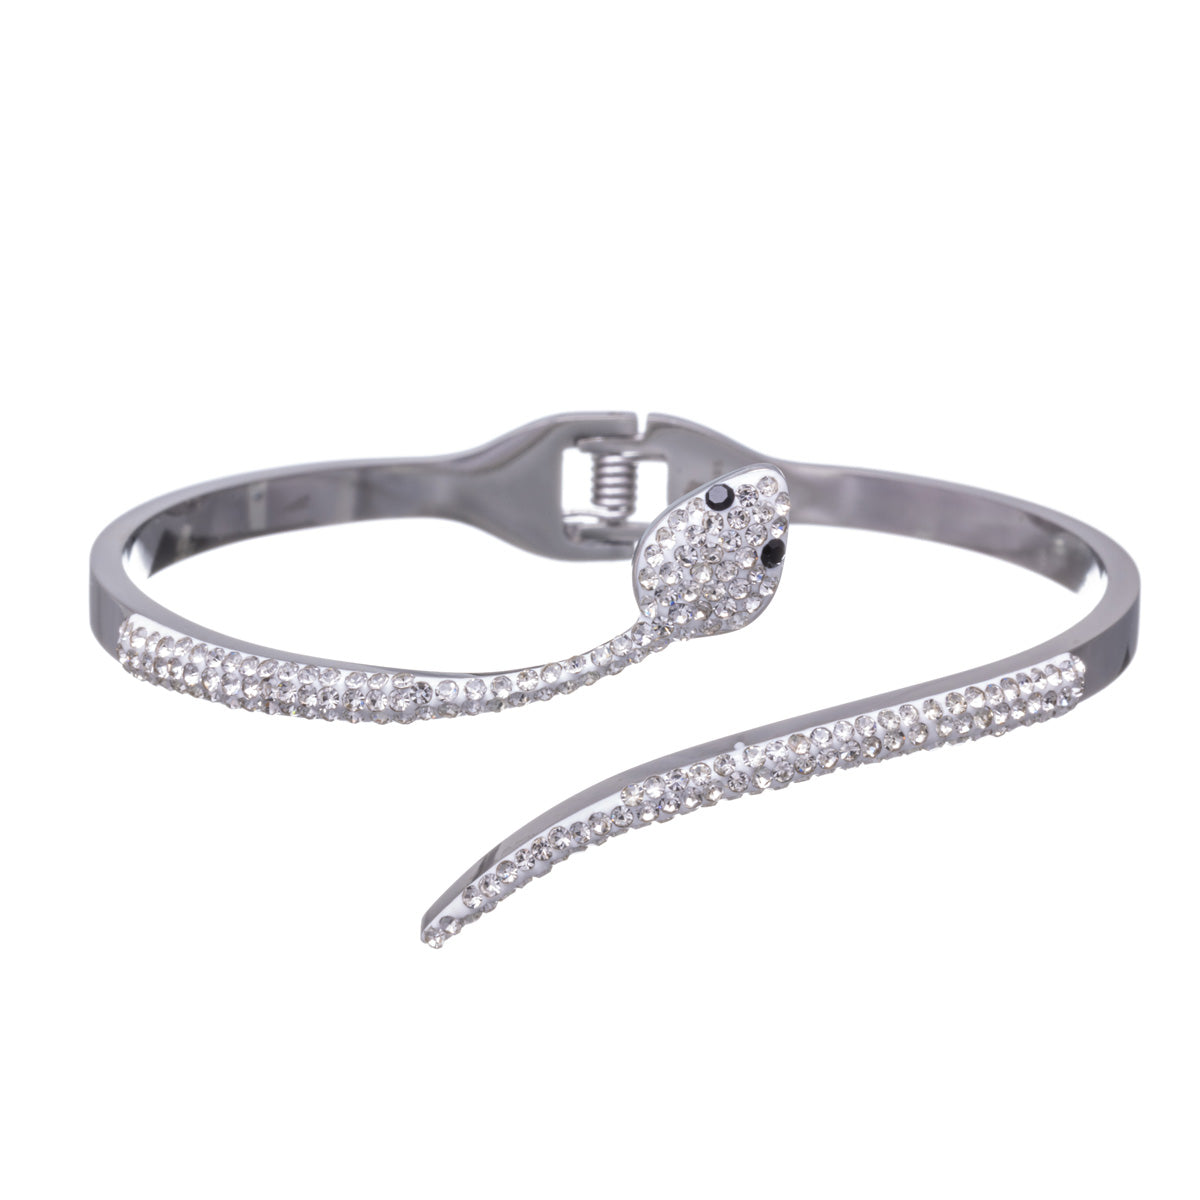 Sparkling steel snake bracelet with hinge